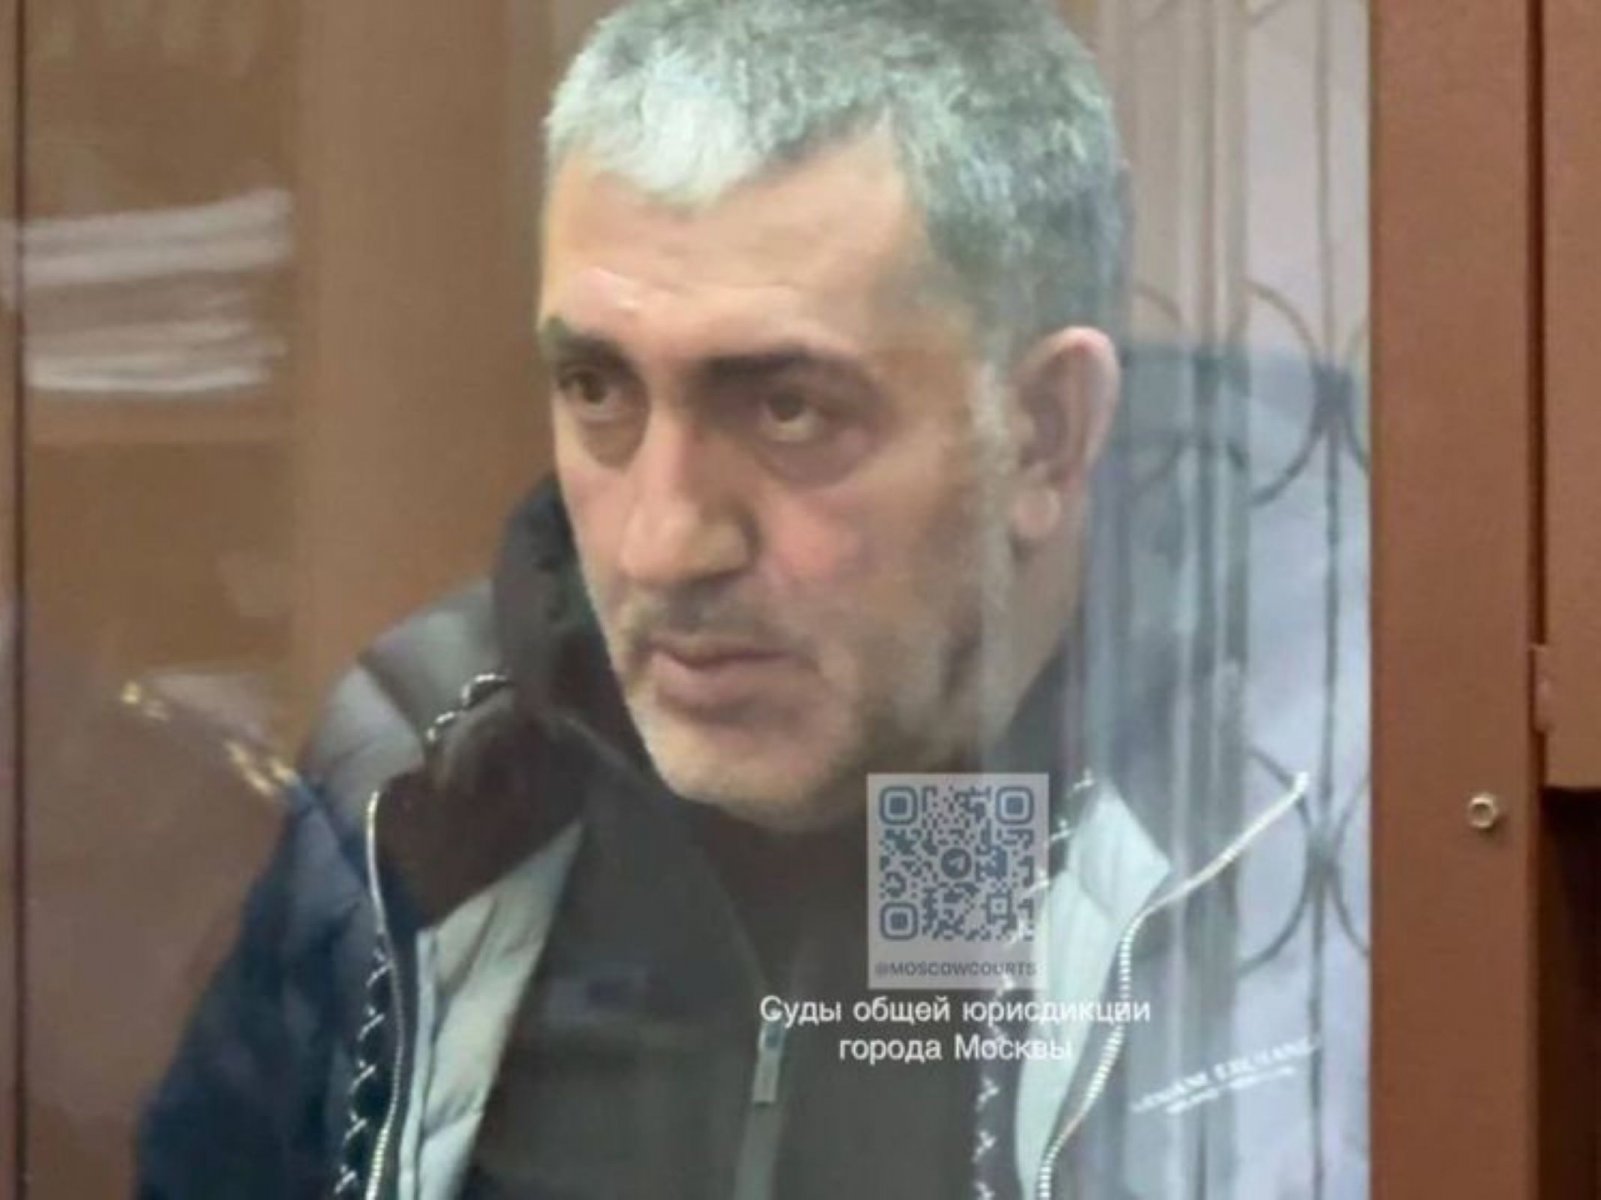 Арестован еще один фигурант по делу главного кадровика Минобороны России